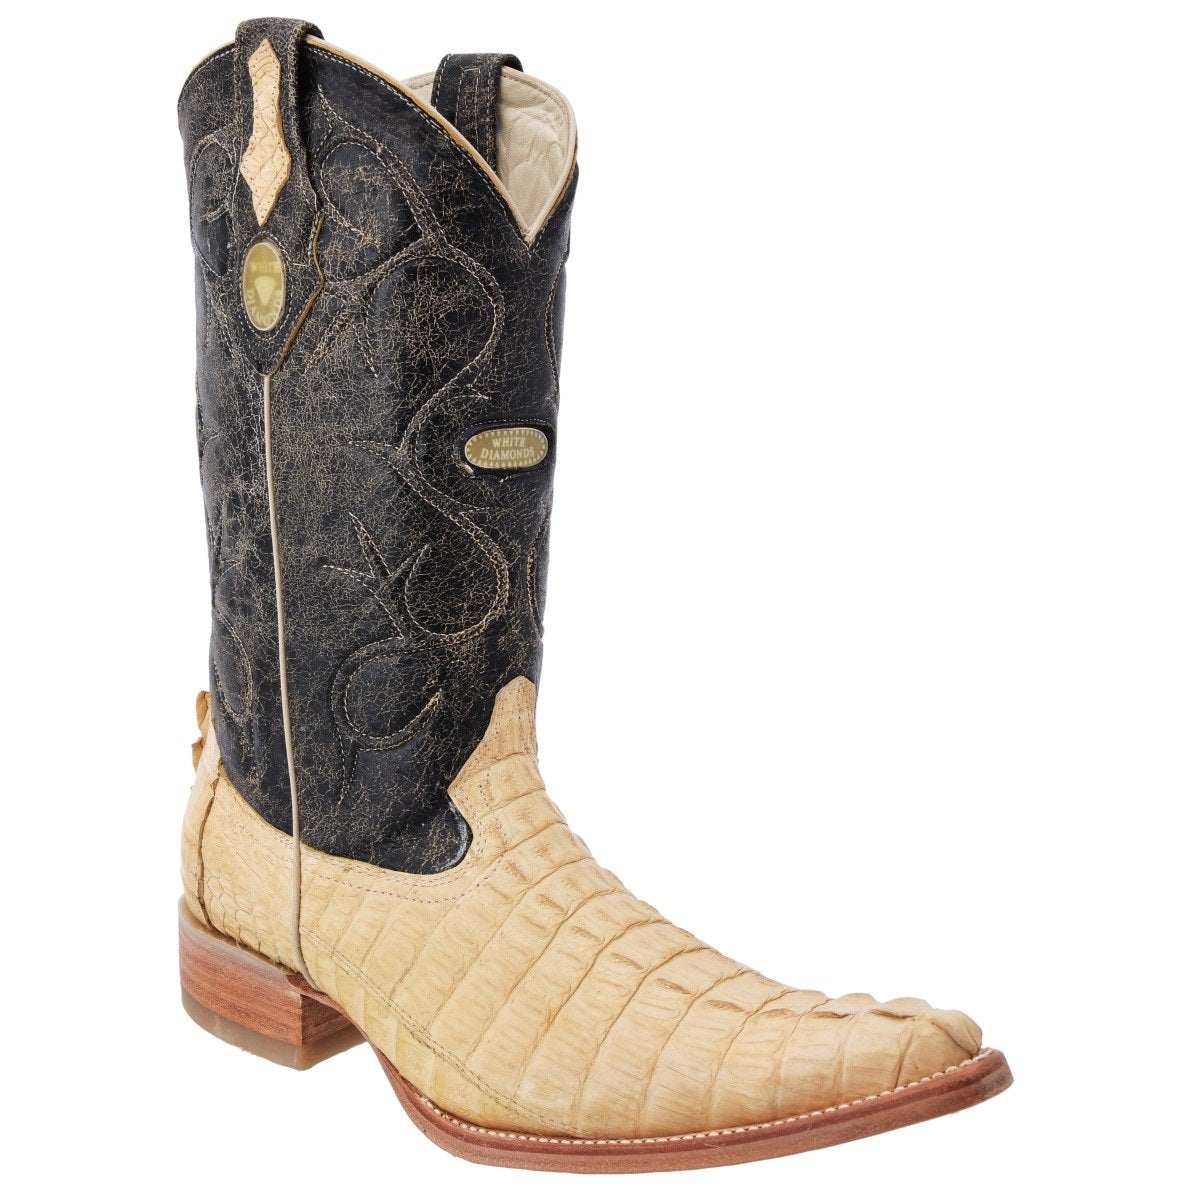 Botas Vaqueras TM-WD0052 - Western Boots